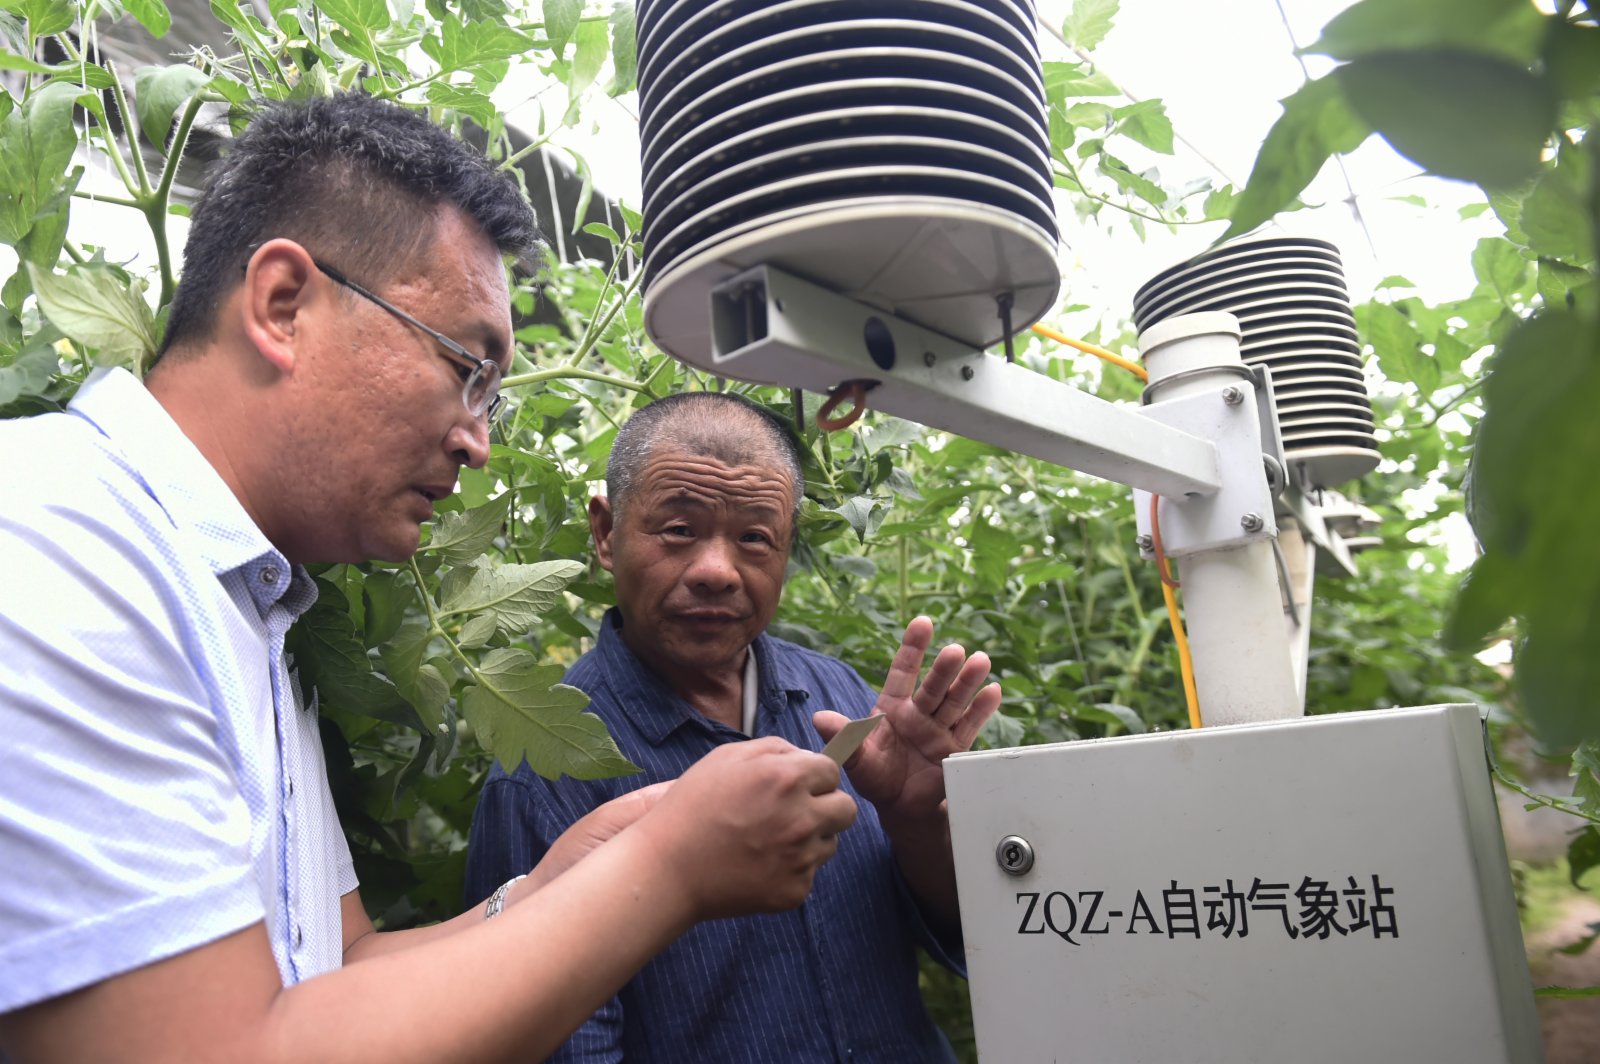 山東省鄒平縣明集鎮金坤生態園技術員在給農民講解大棚自動氣象站的運轉情況，該設備可以採集大棚內的光照、溫濕度、氣壓、土壤酸鹼度等數據（2018年5月14日攝）。